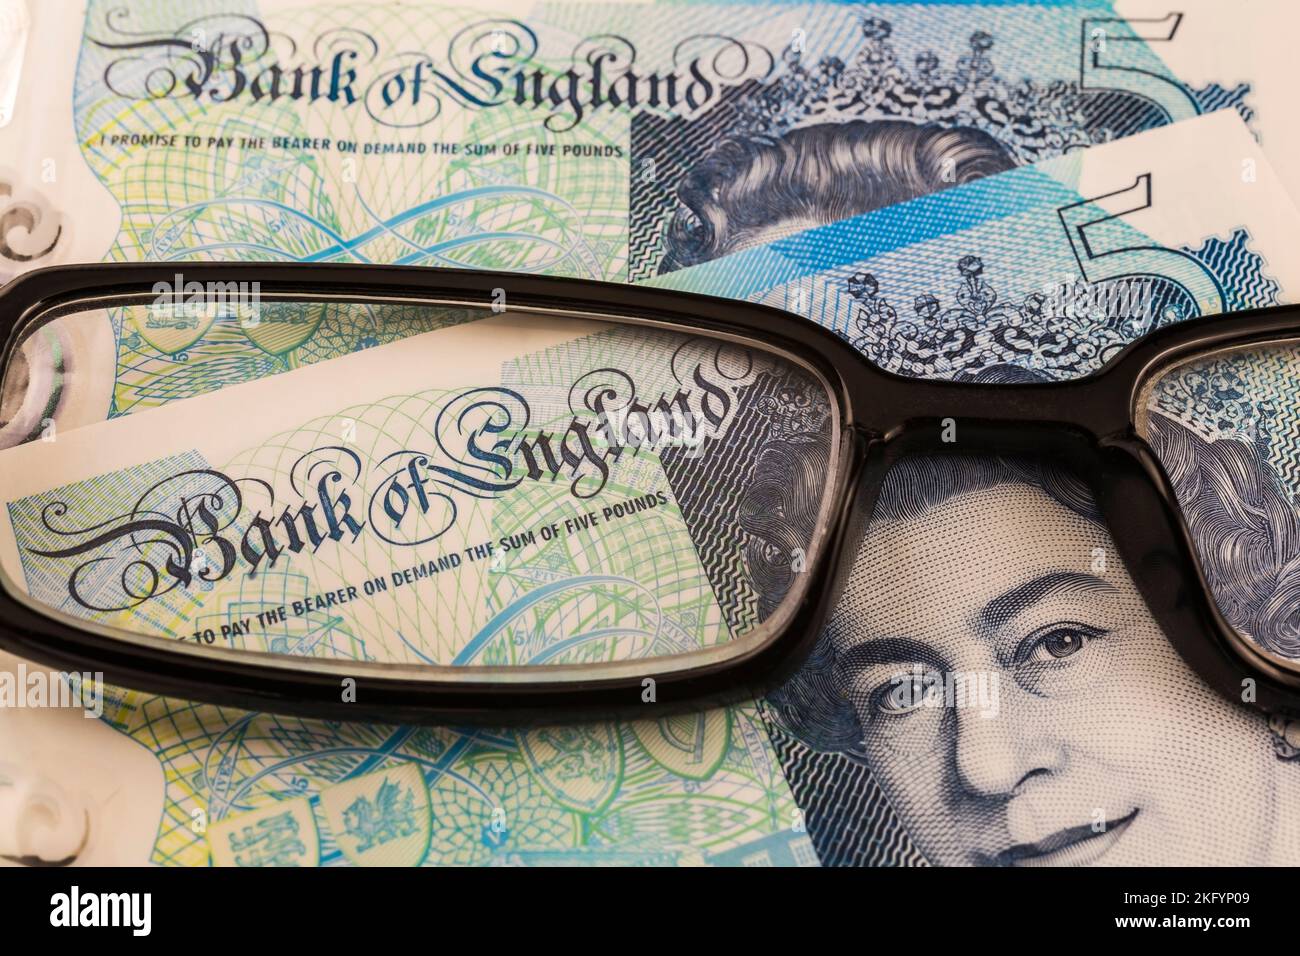 Portrait de la reine Elizabeth II sur la Banque d'Angleterre cinq livre note à travers des lunettes de lecture noires. Banque D'Images